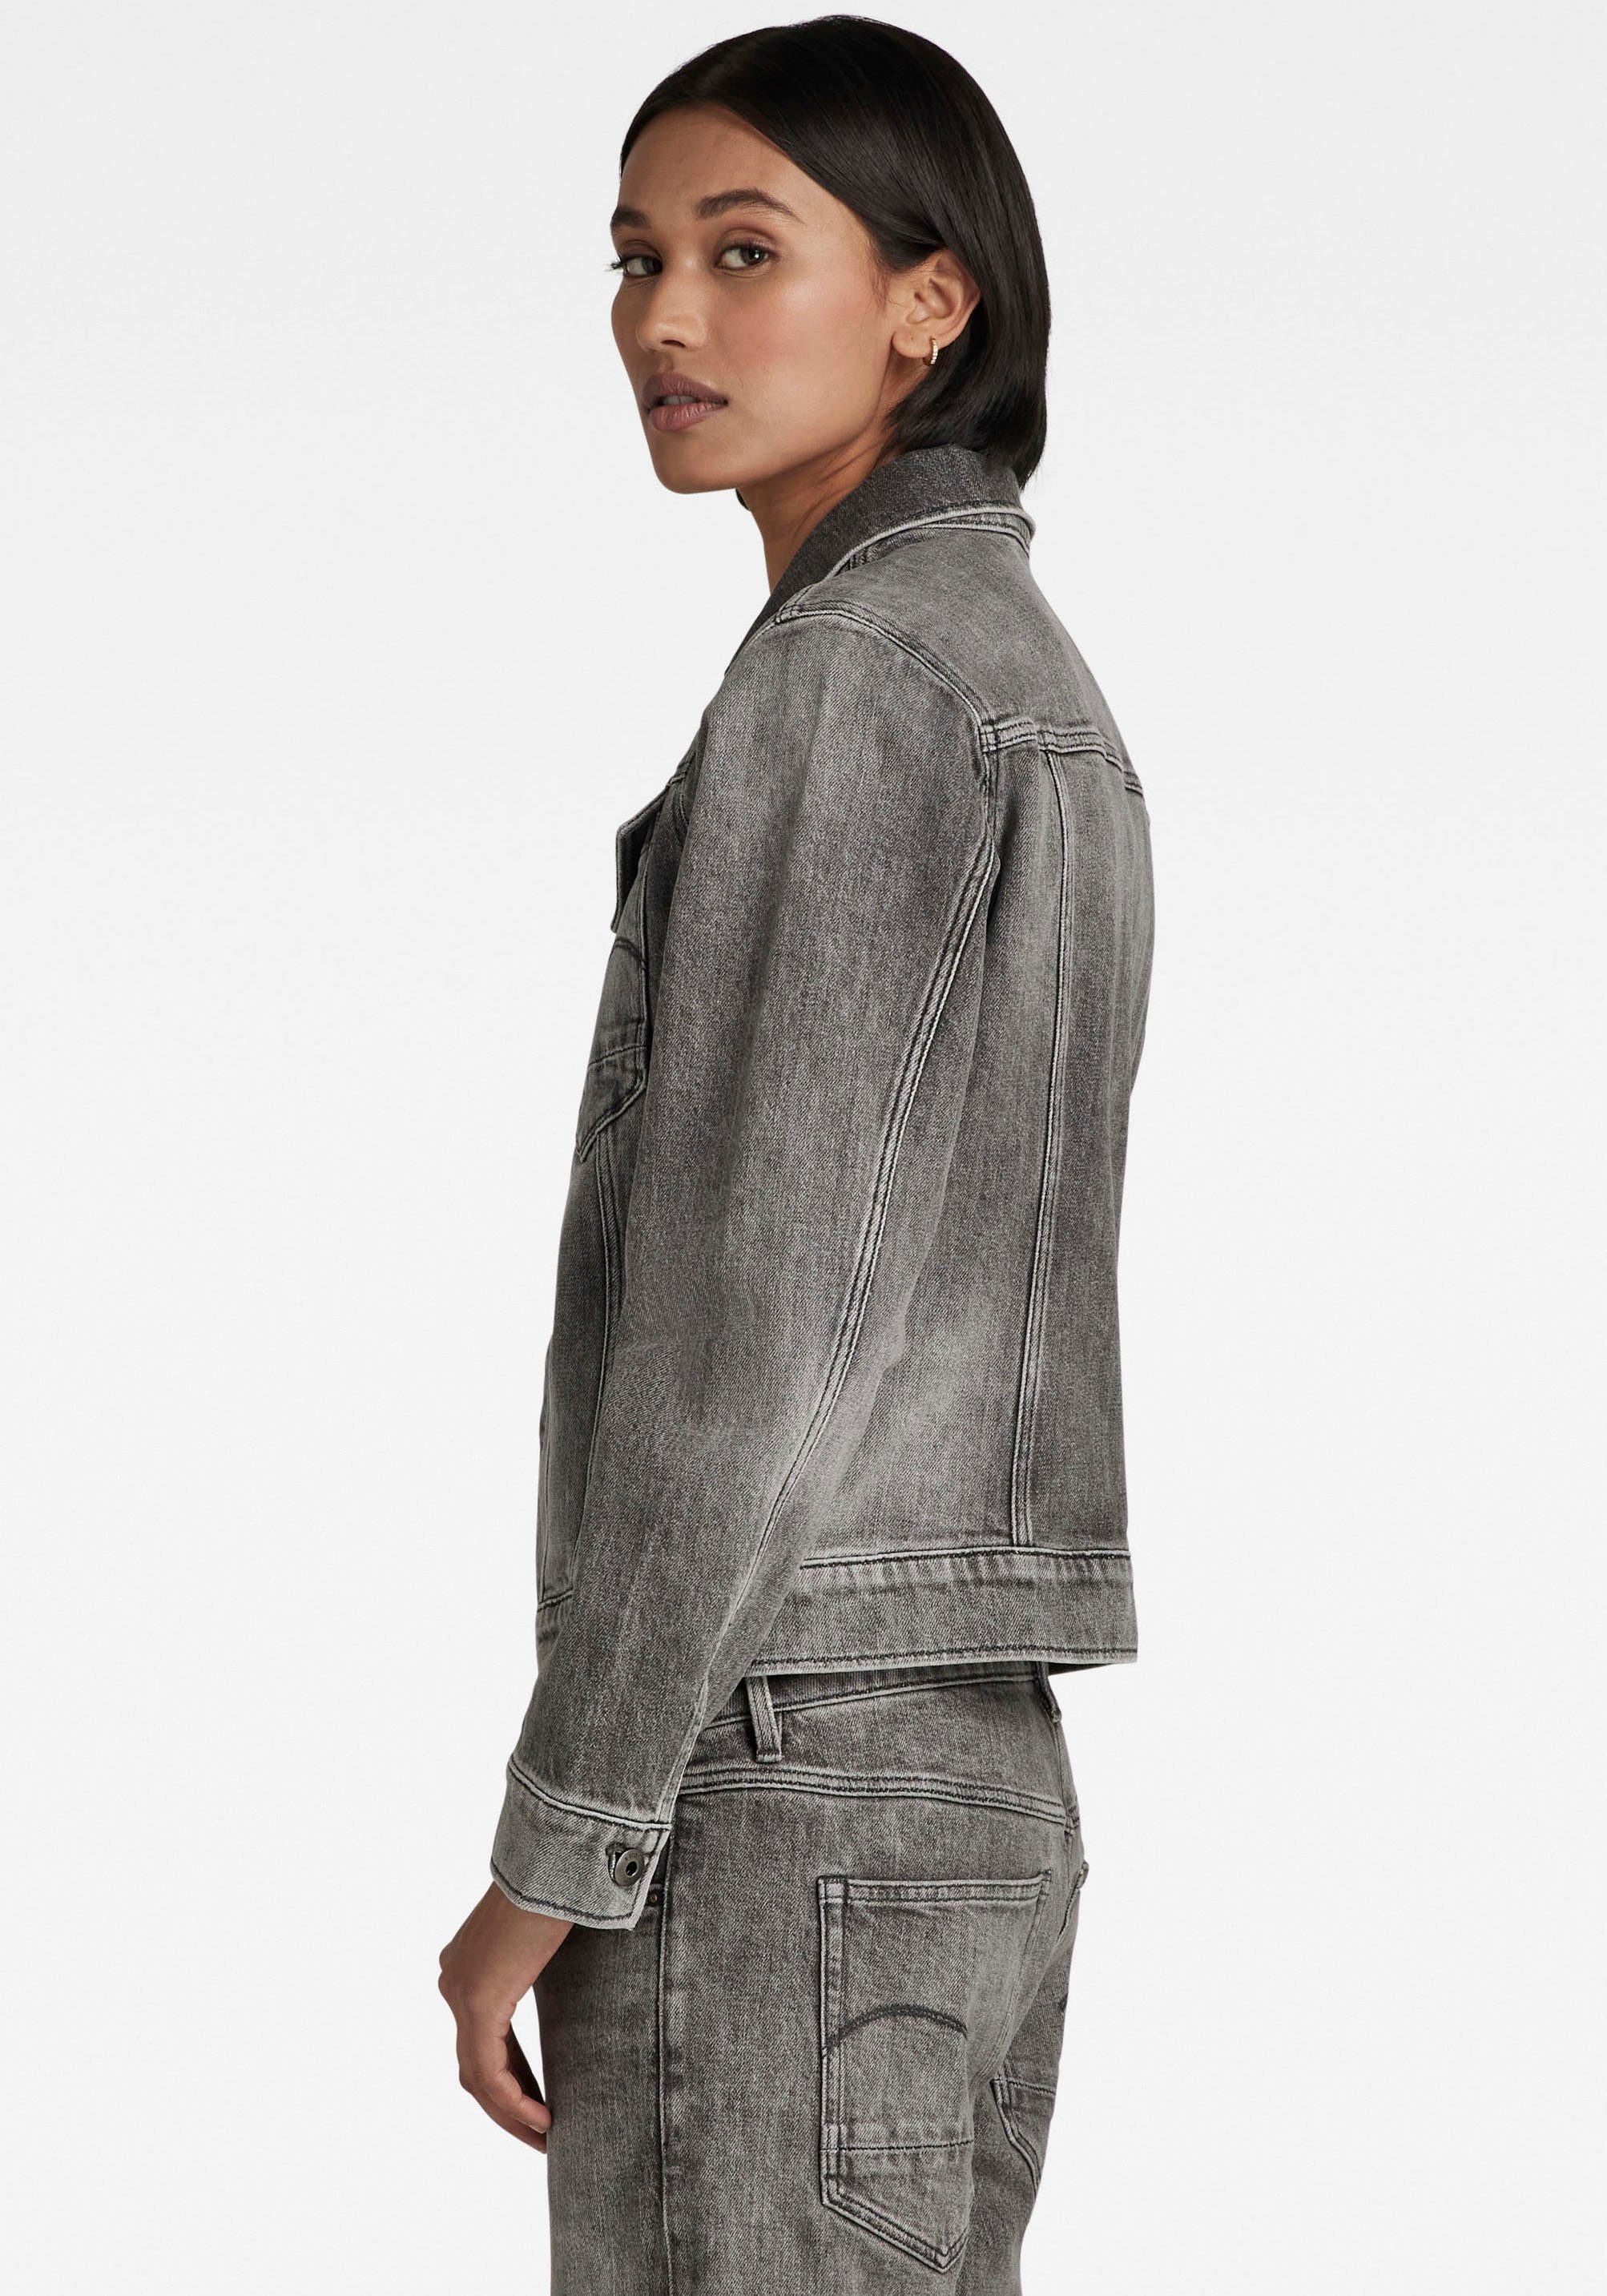 Pattentaschen carbon faded 3D RAW jacket Arc mit Jeansjacke mit Ösenknöpfen G-Star aufgesetzten